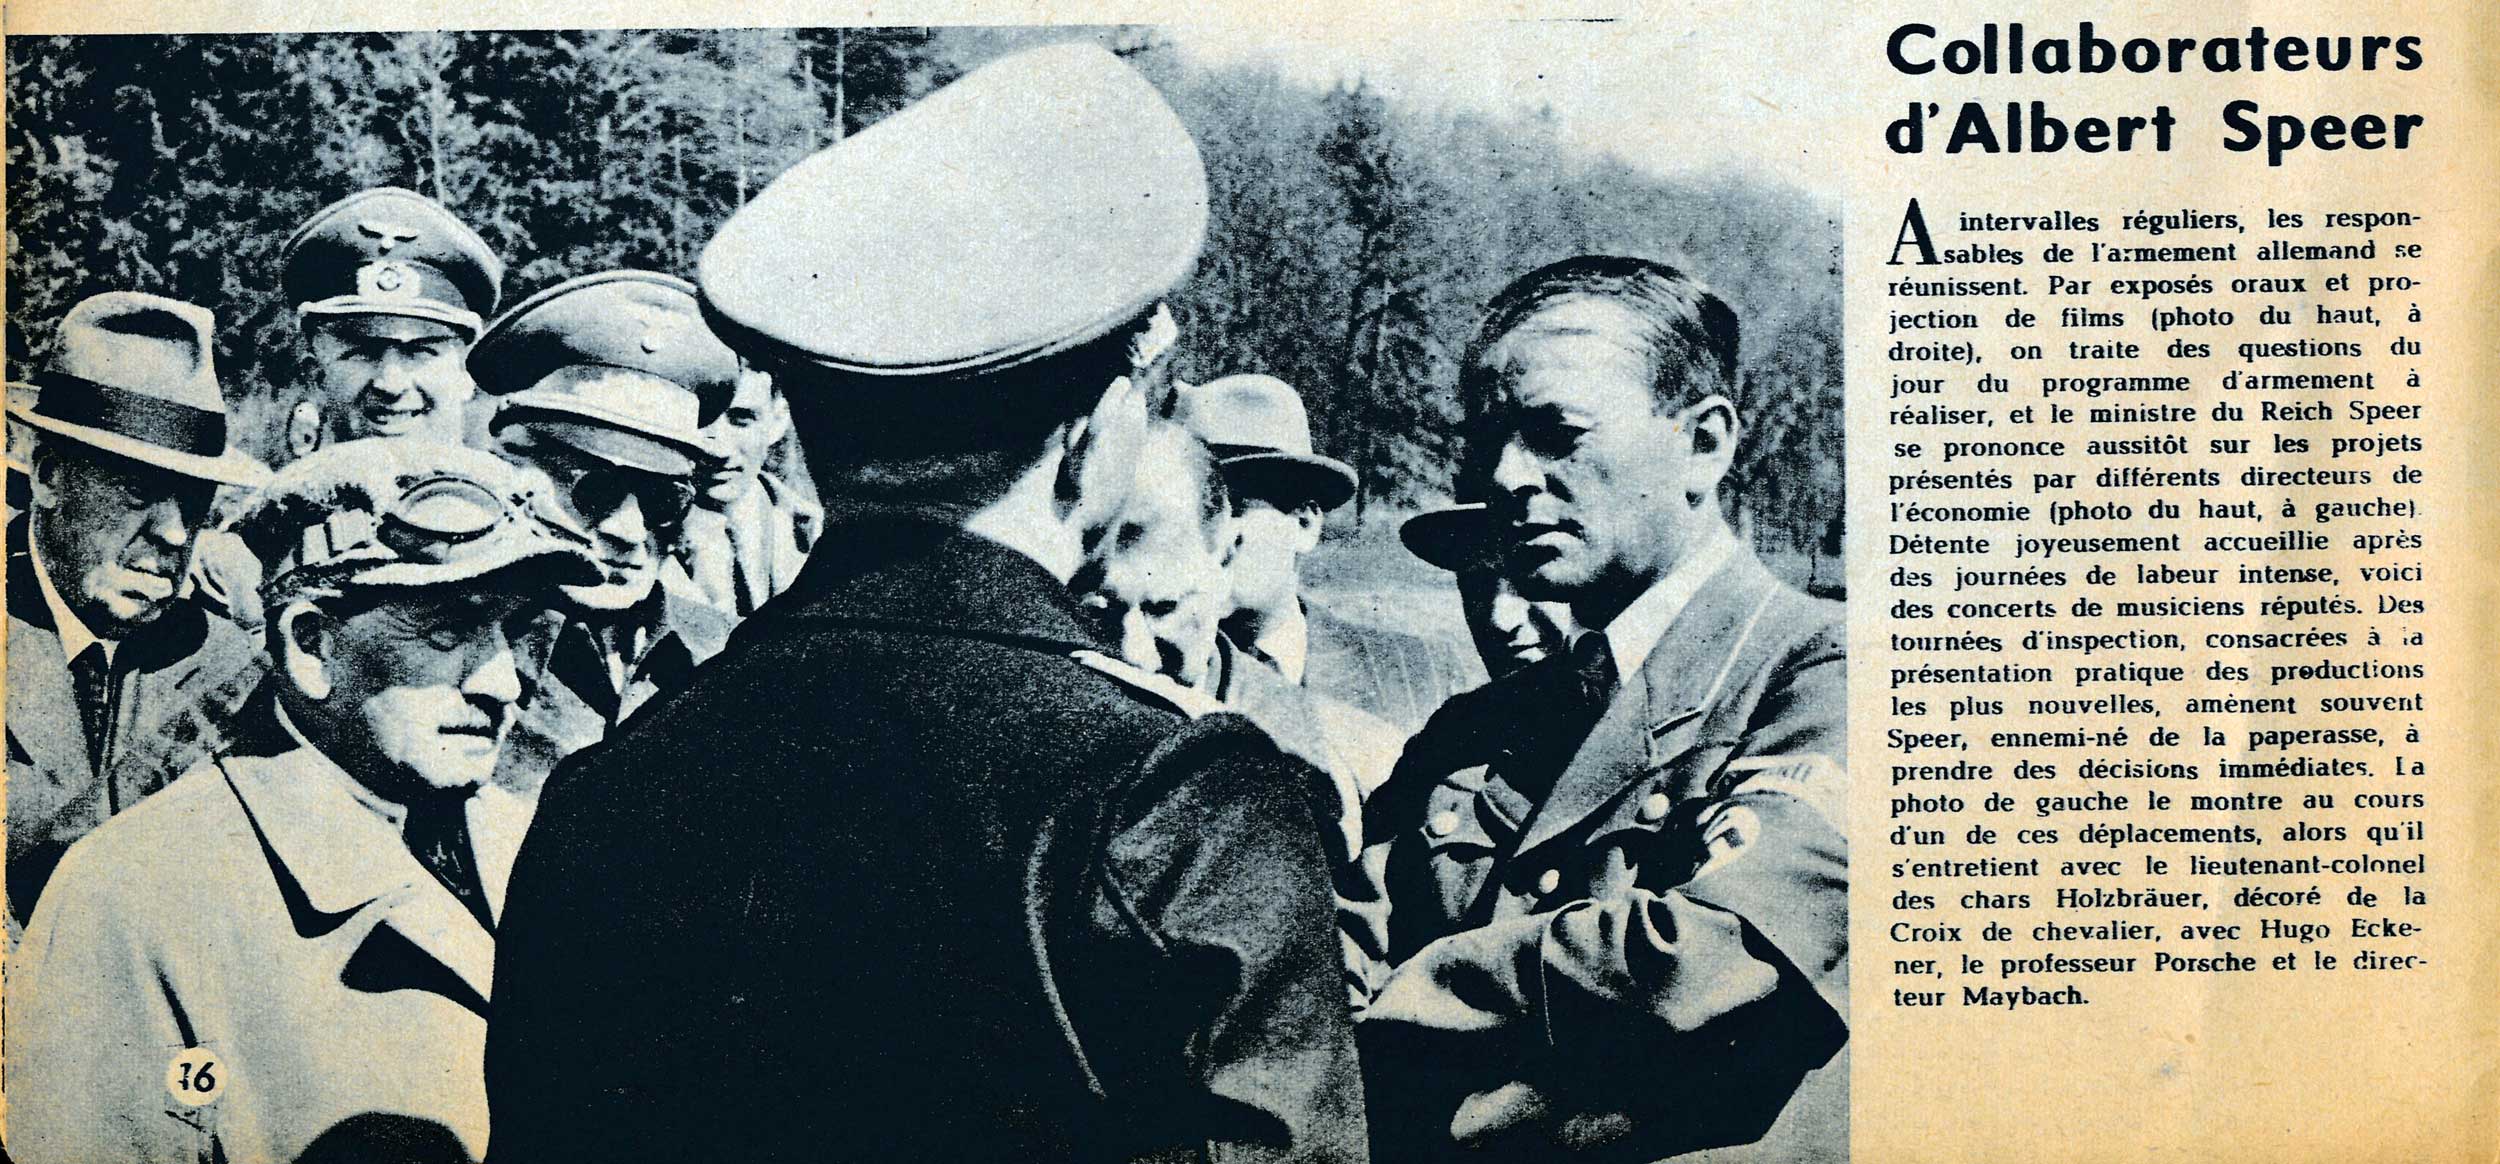 Hugo Eckener with armaments minister Albert Speer